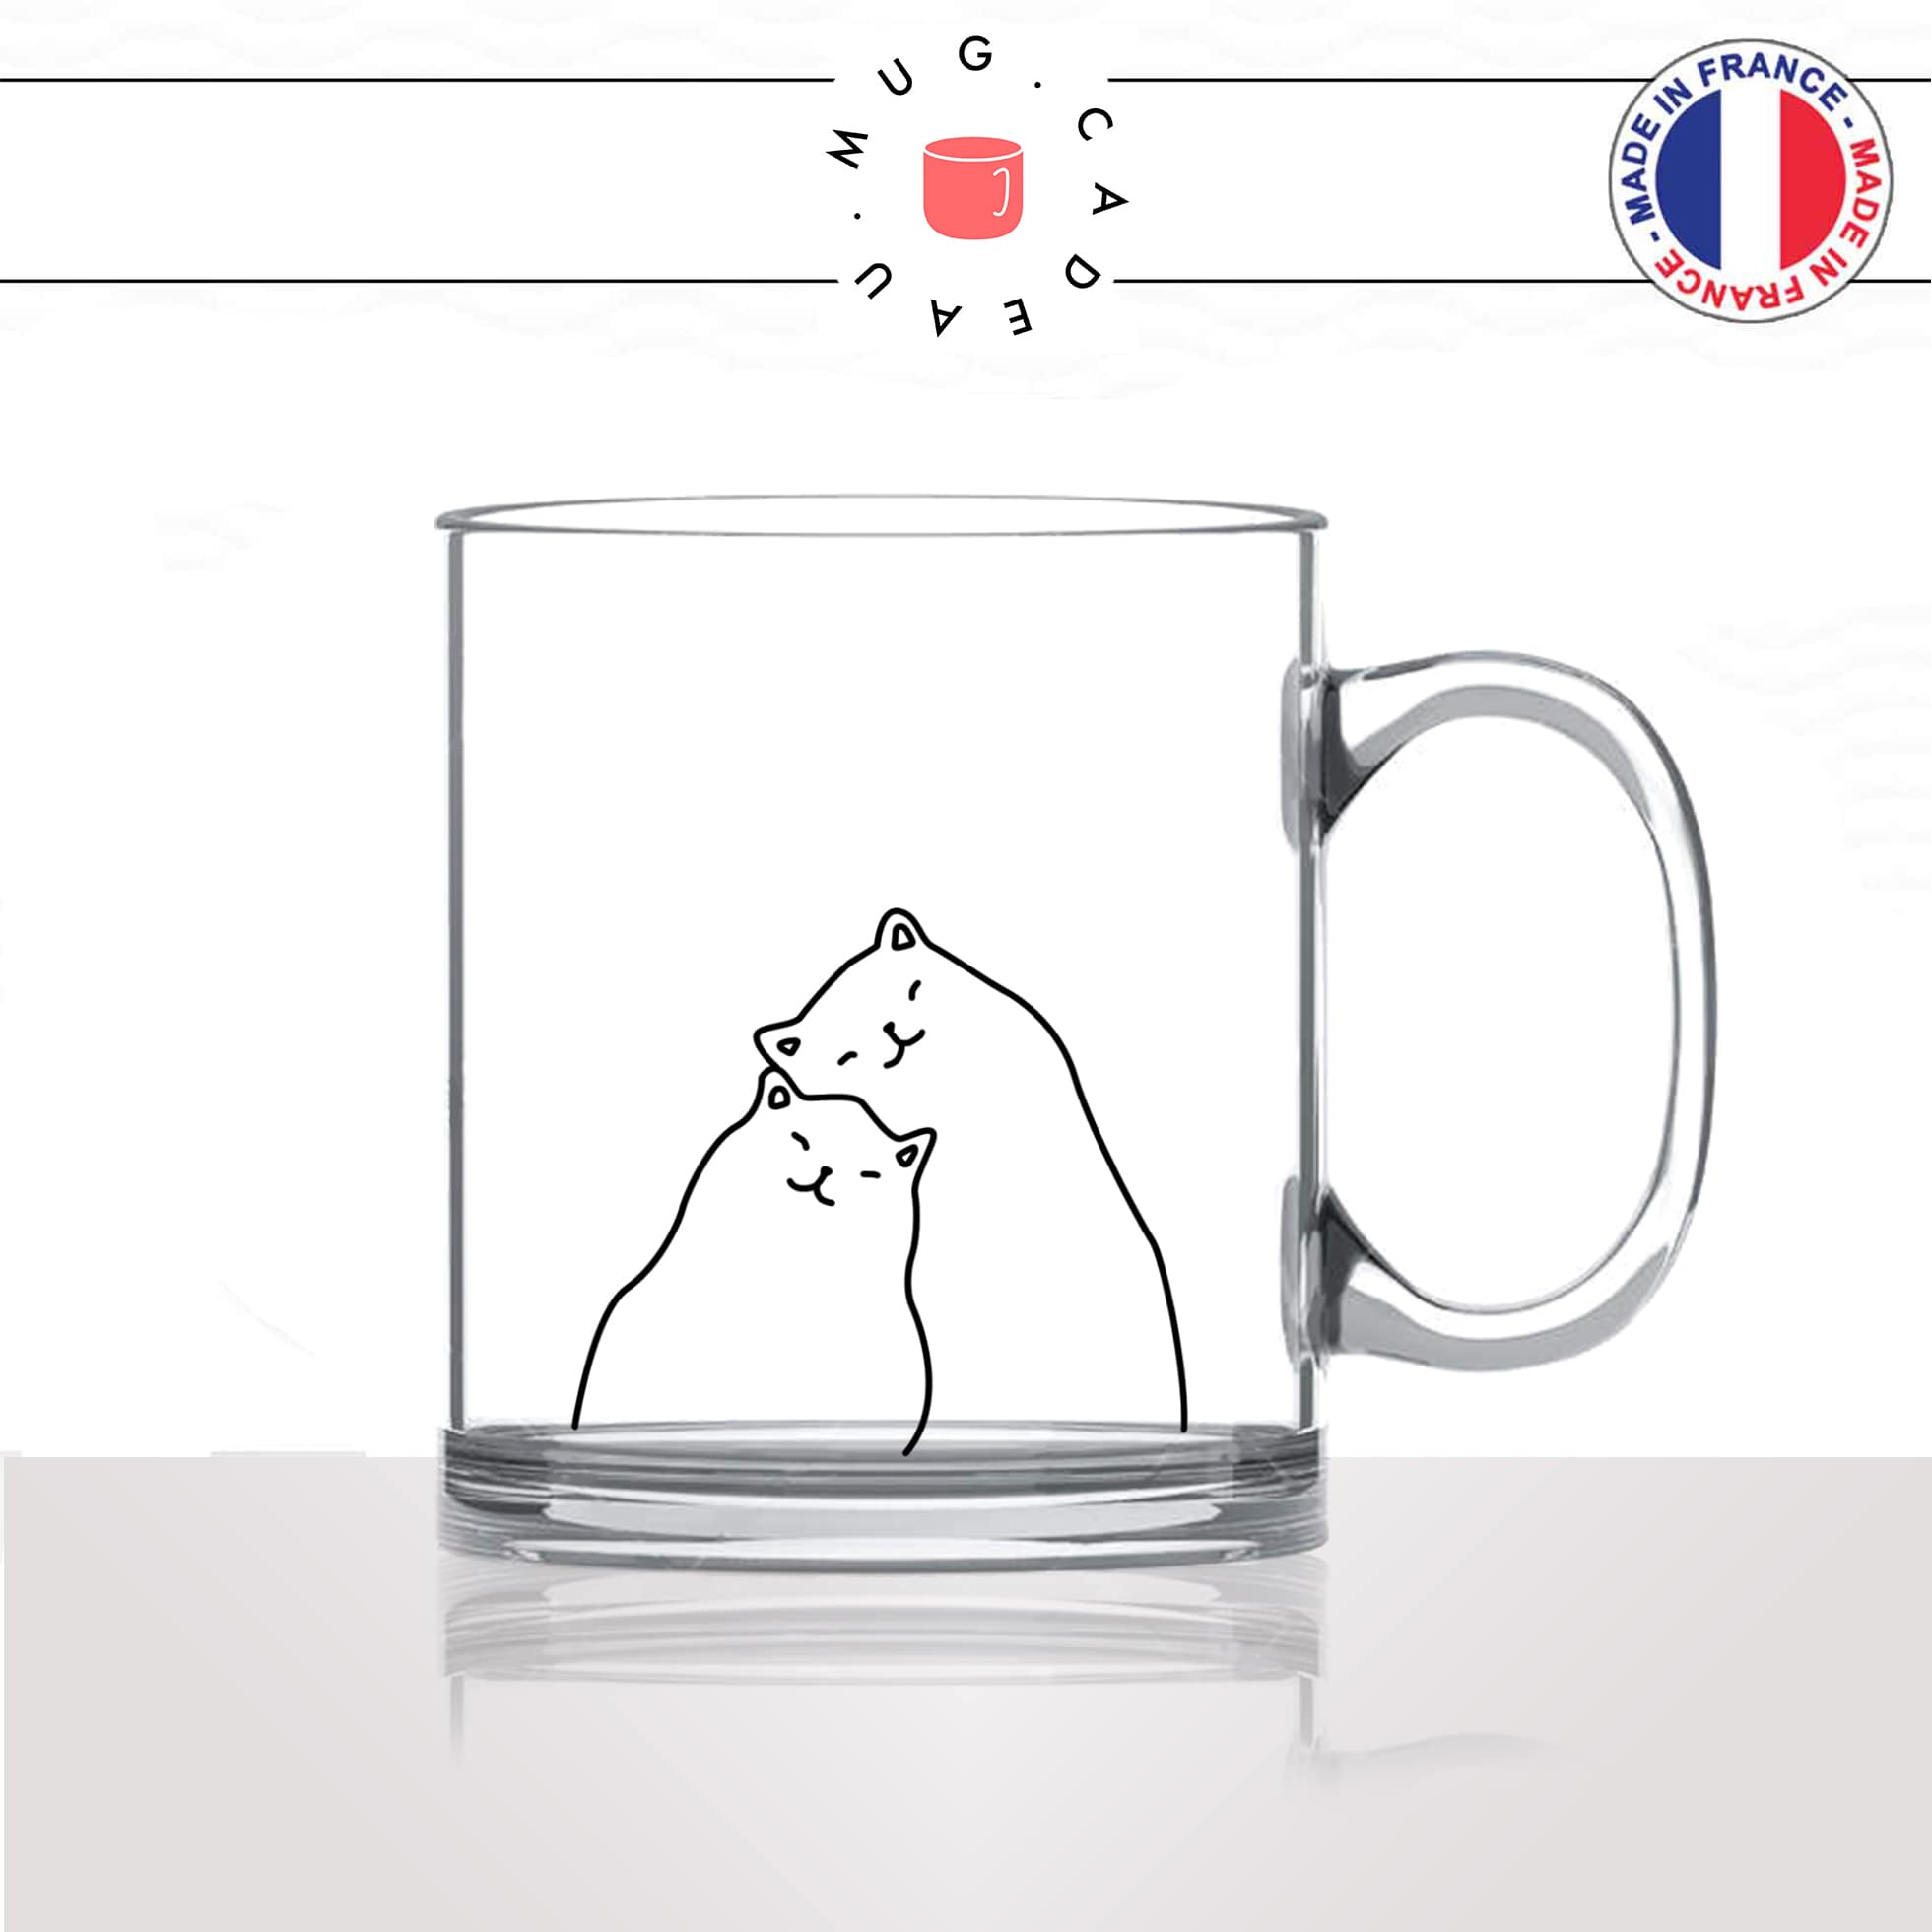 mug-tasse-en-verre-transparent-amoureux-couple-amour-chats-mignon-animal-chaton-dessin-noir-fun-café-thé-idée-cadeau-original-personnalisé2-min